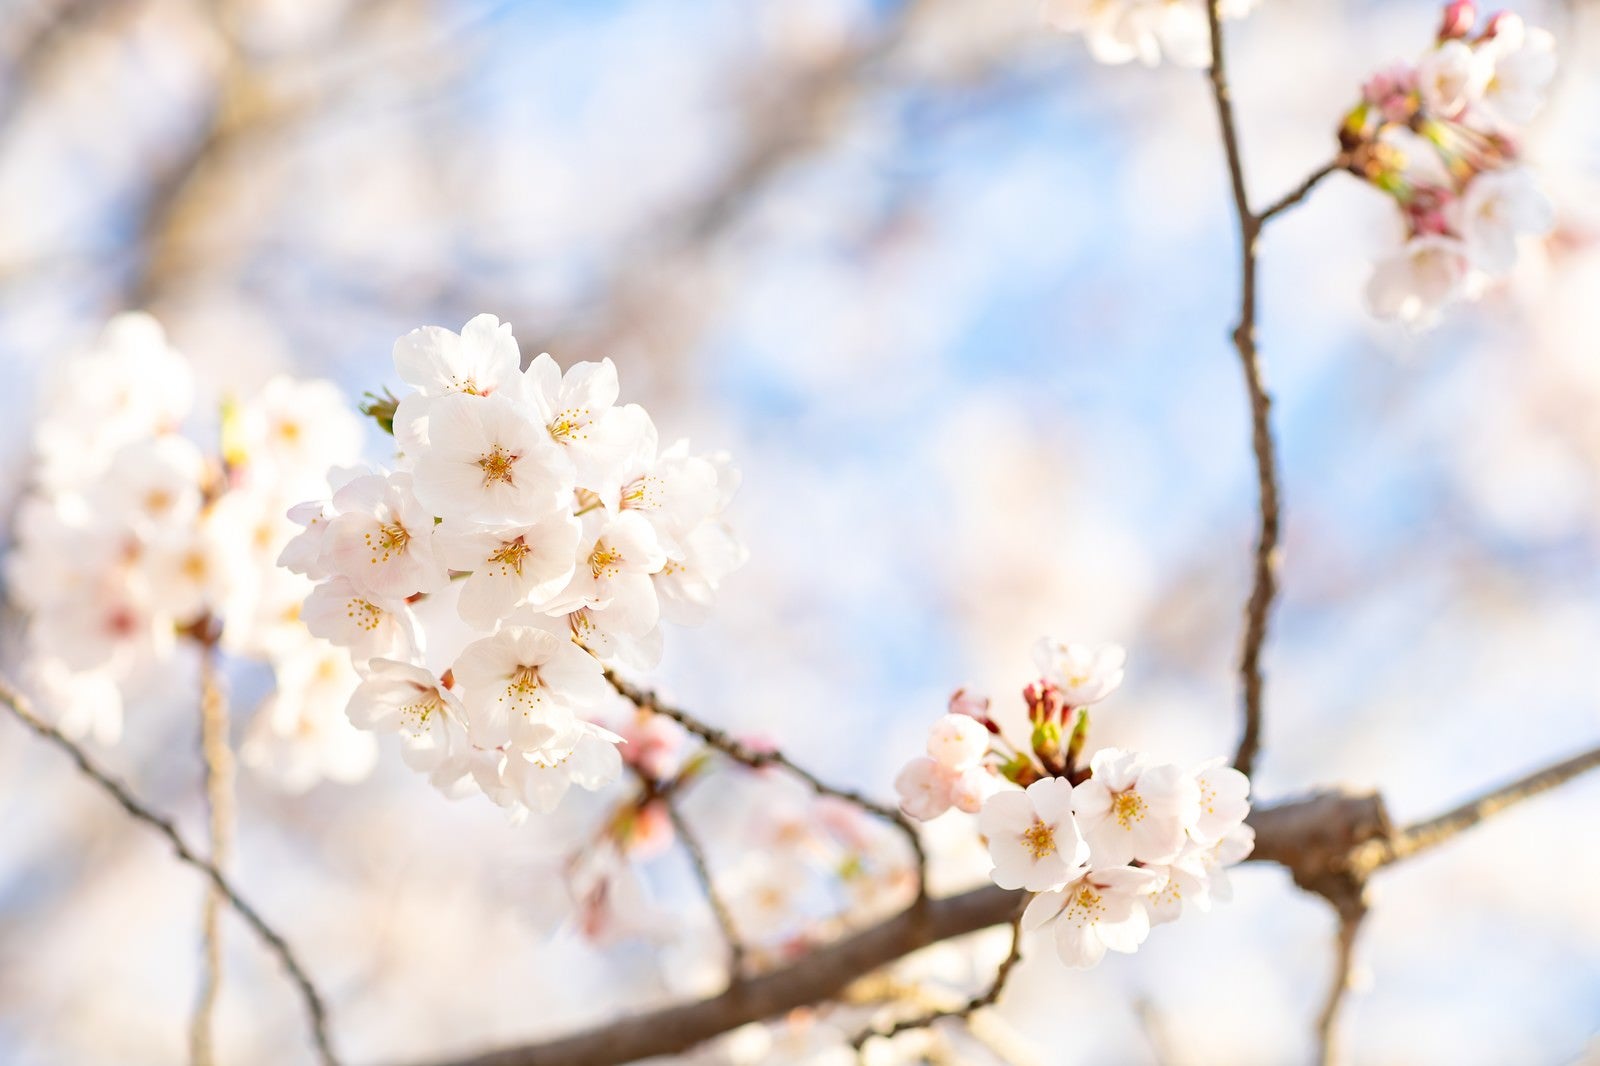 「桜にそそぐ春の陽射し」の写真